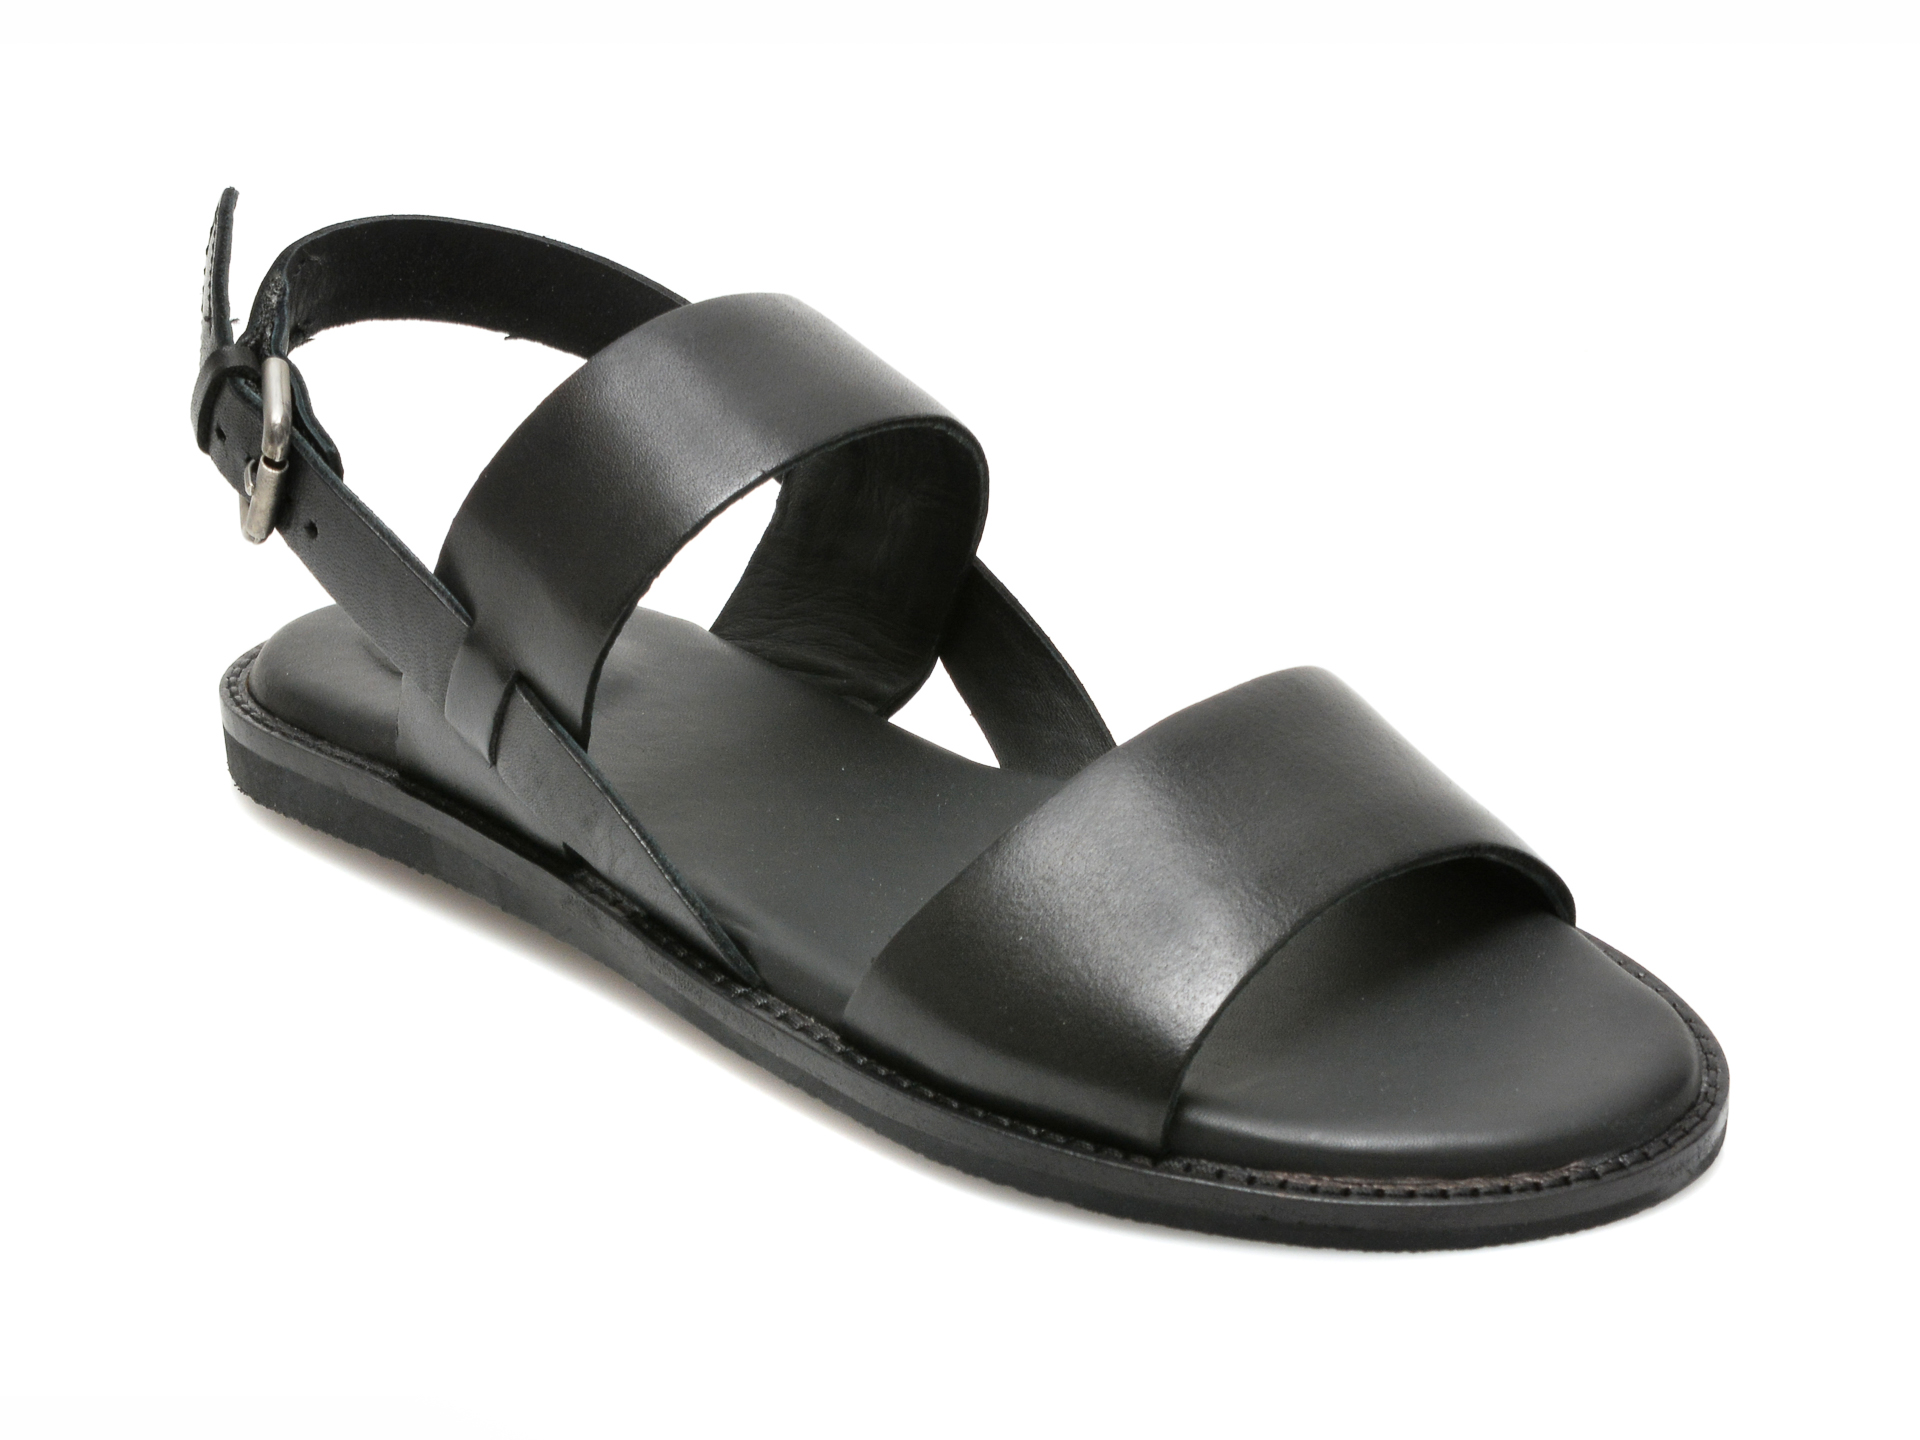 Sandale CLARKS negre, KARSEA STRAP, din piele naturala Clarks Clarks